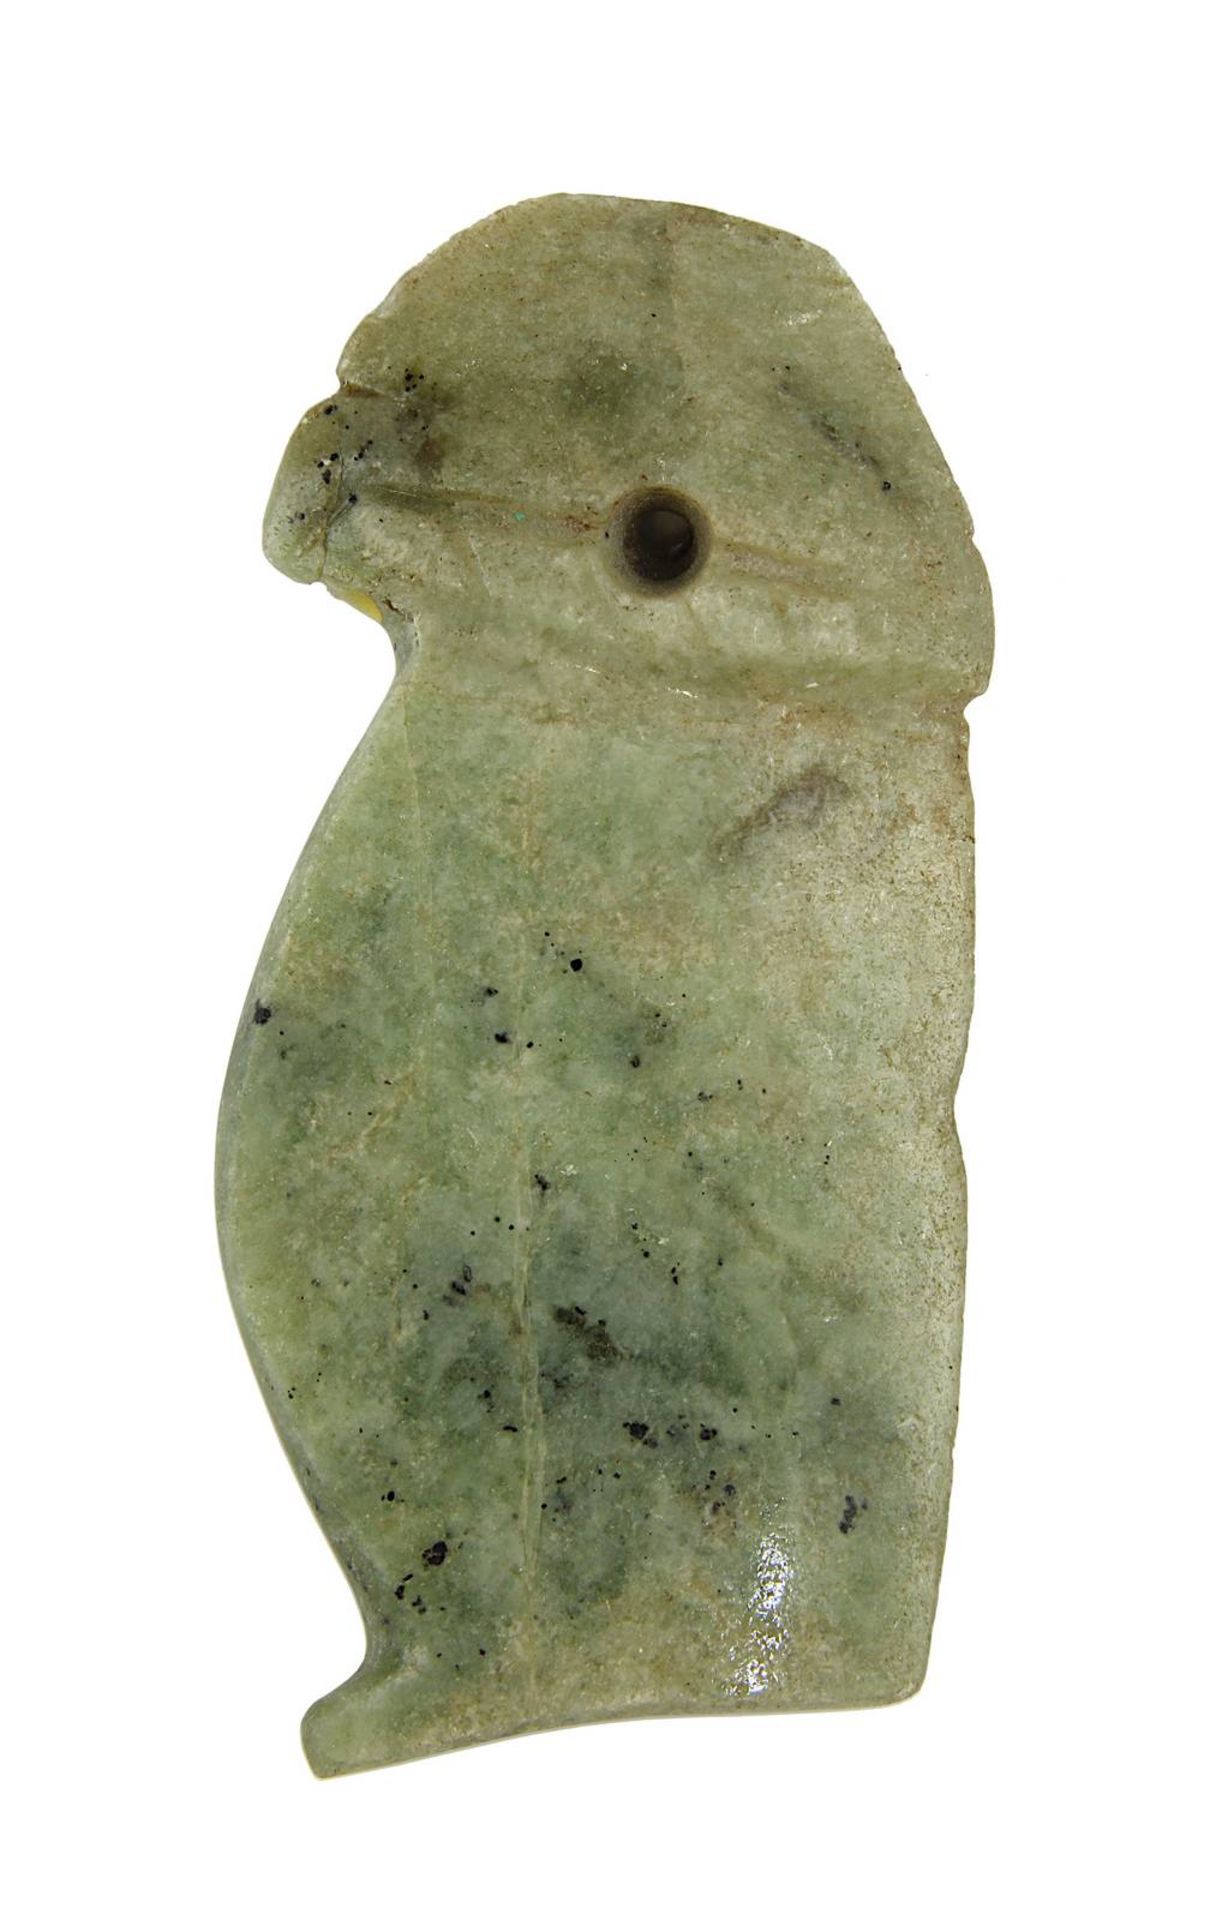 Jadeit-Amulettanhänger in Vogelform, Guanacaste, Costa Rica, vor 1000 A. D., flacher Anhänger